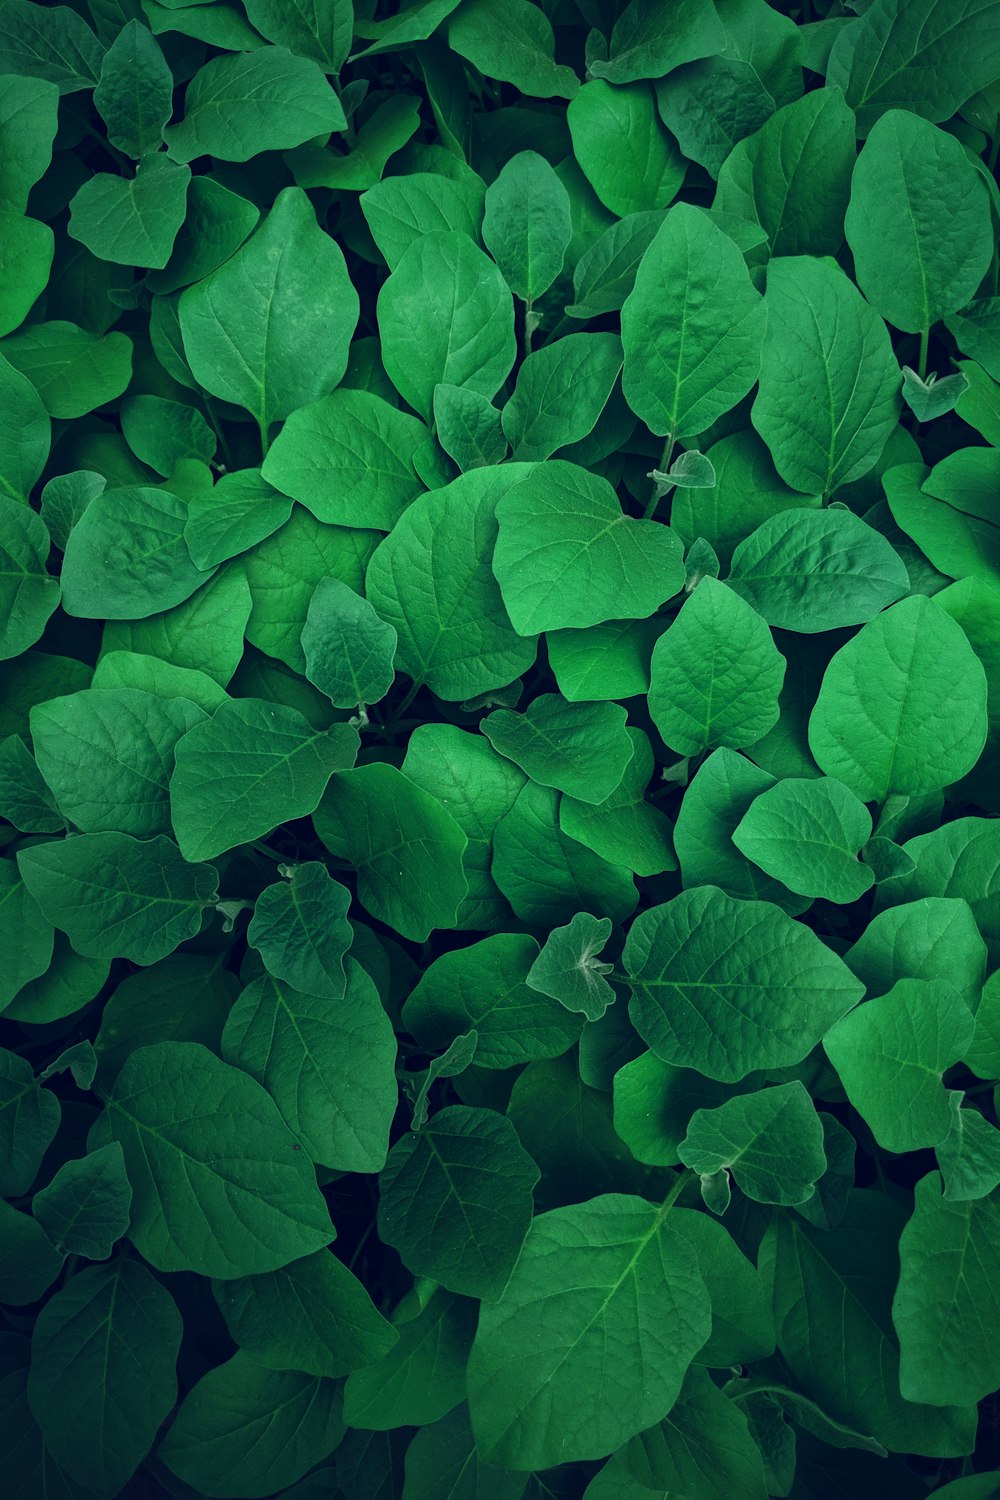 Hình ảnh nền màu xanh lá cây: Những bức hình nền màu xanh lá cây sẽ làm cho tâm trạng bạn trở nên sảng khoái và thư giãn hơn. Hãy đắm mình trong những gam màu tươi sáng của thiên nhiên và cảm nhận sự thật tuyệt đẹp của cuộc sống.